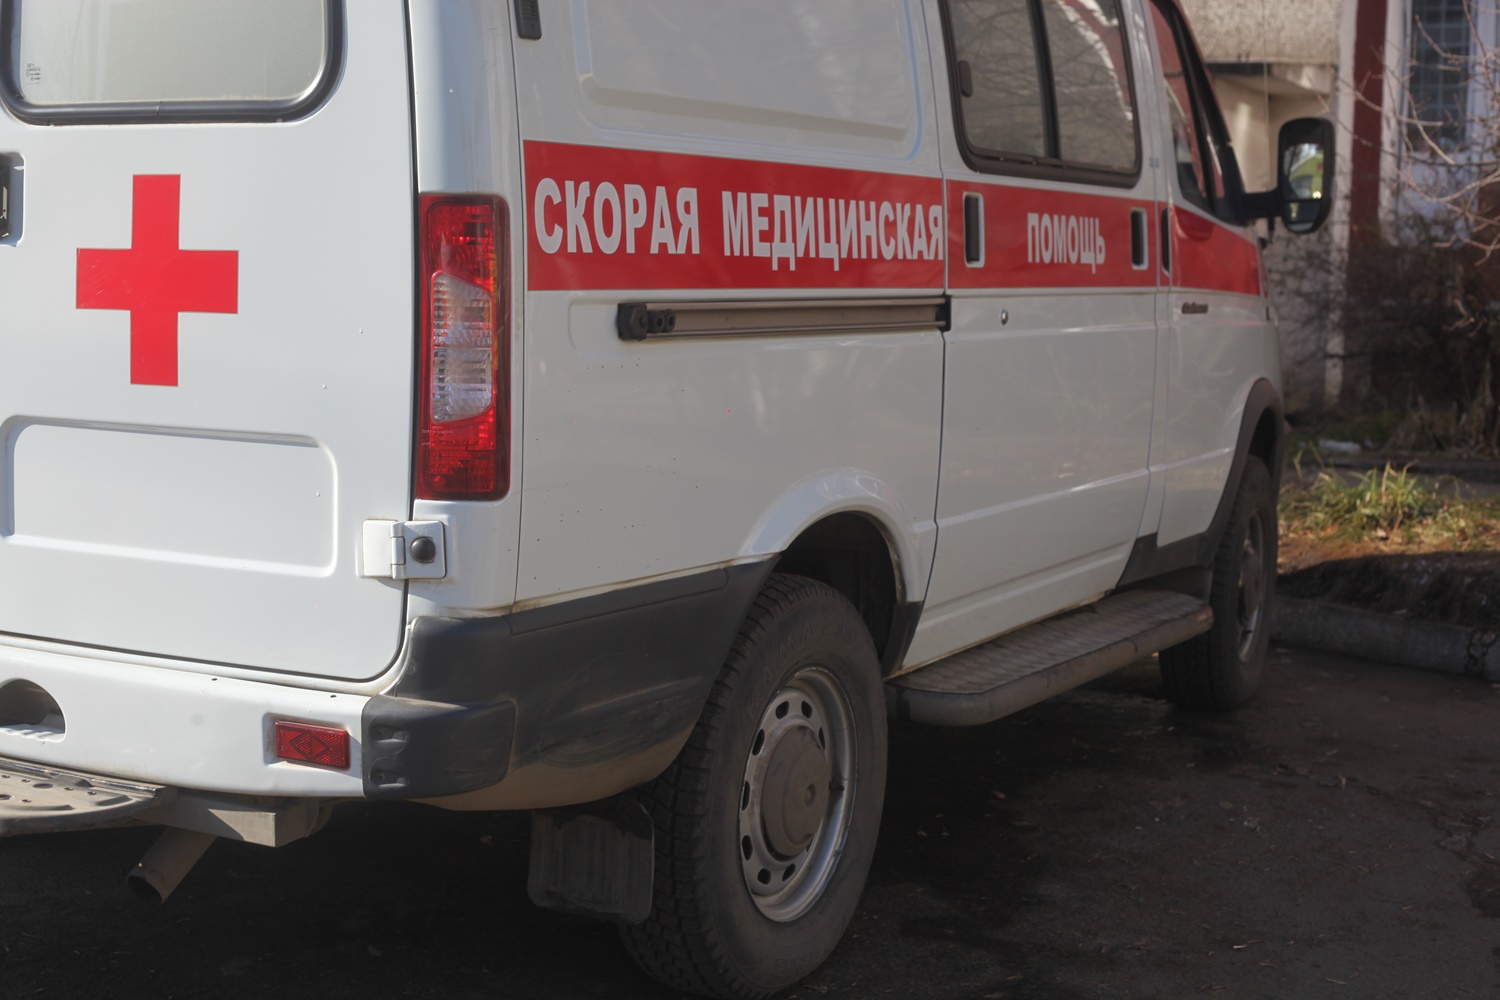 "Вызовов очень много". Работа скорой помощи в Иркутске в период пандемии